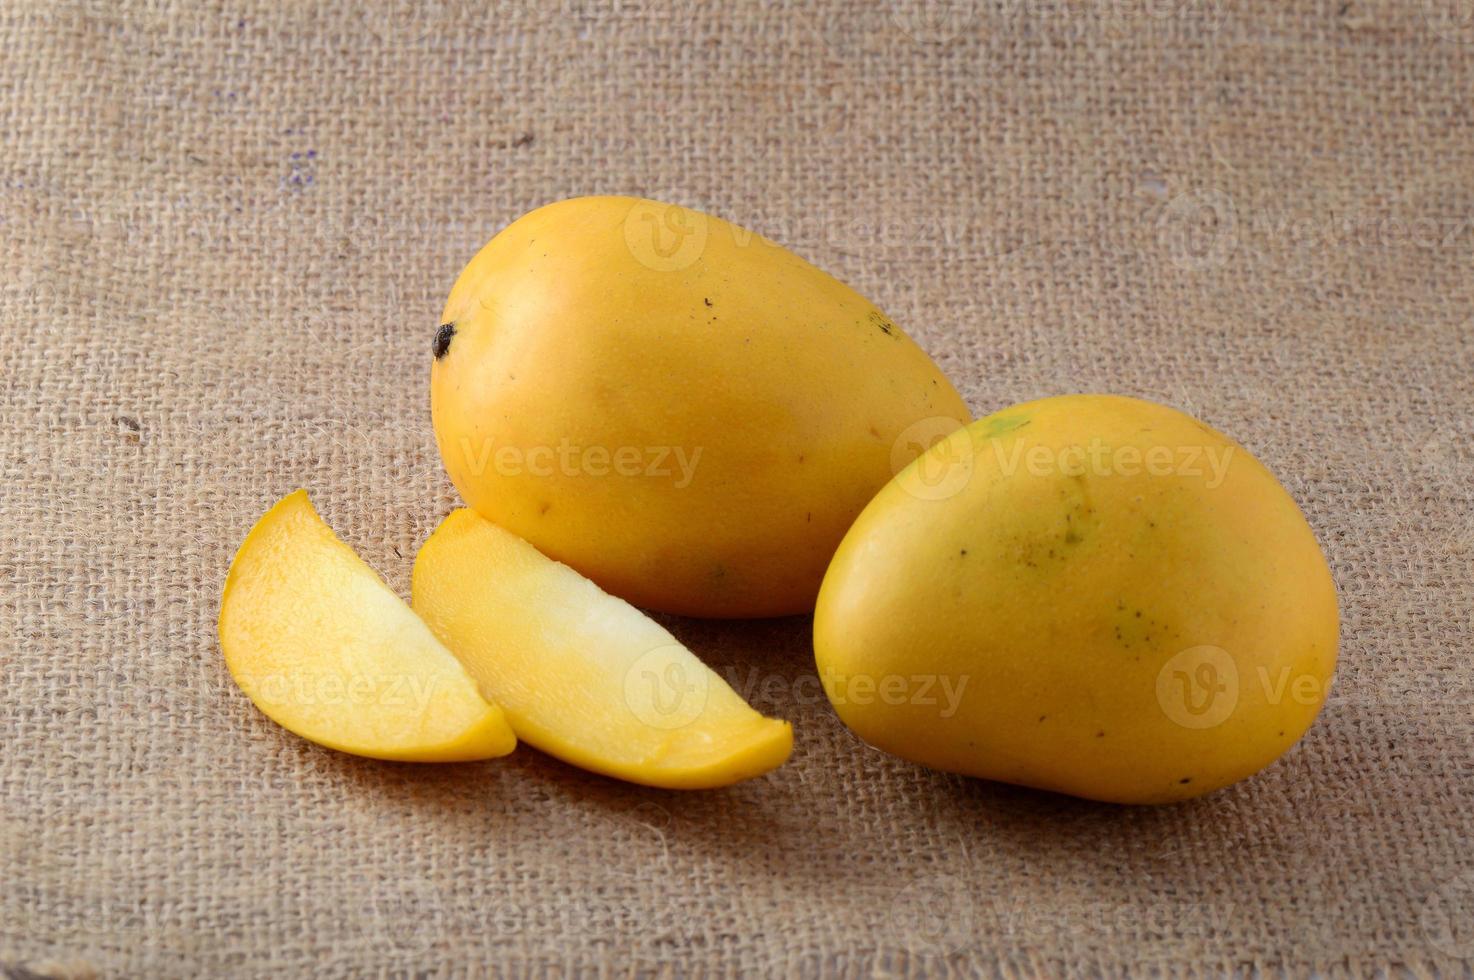 Mango fruit with slice on sack cloth background photo